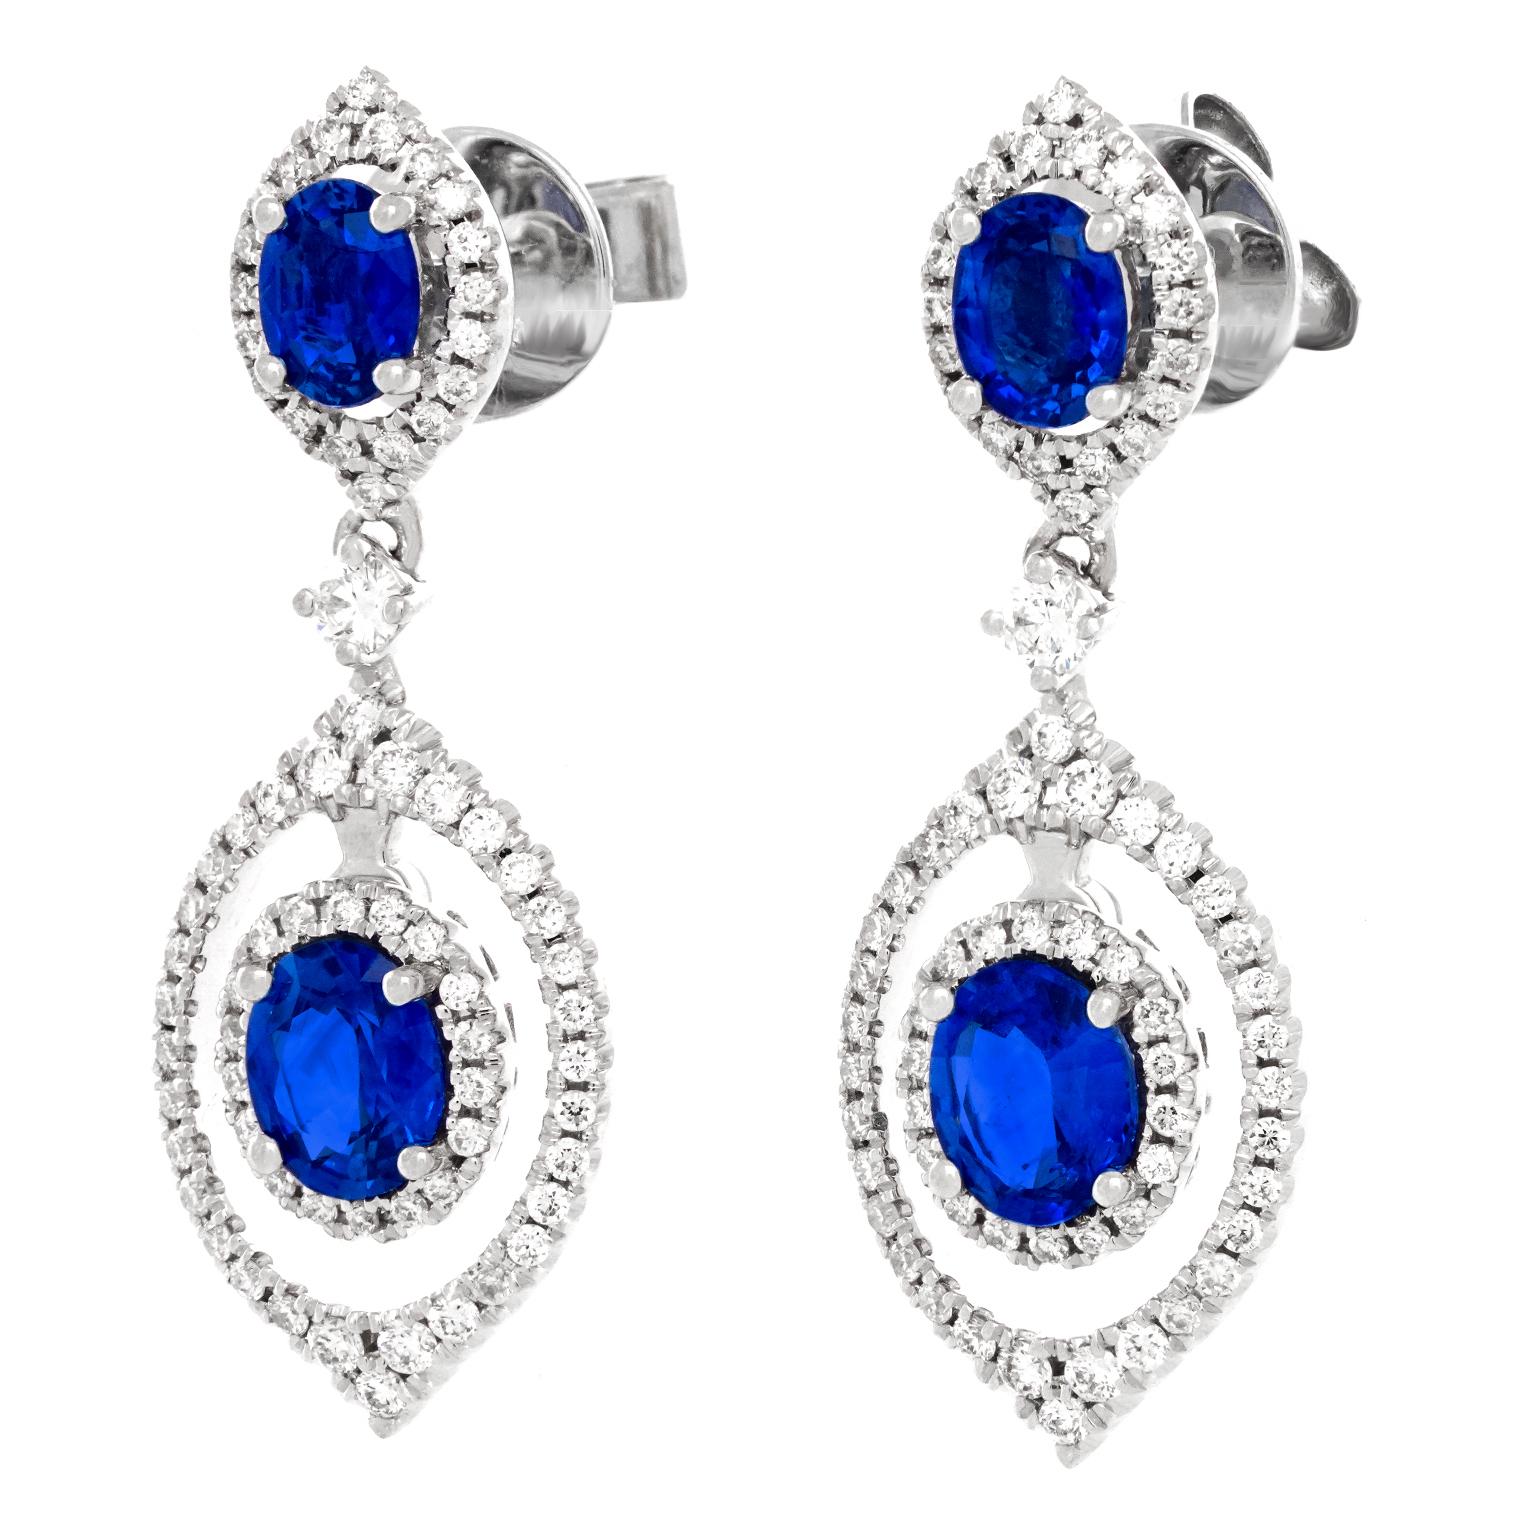 Oval Cut Sapphire and Diamond Chandelier Earrings